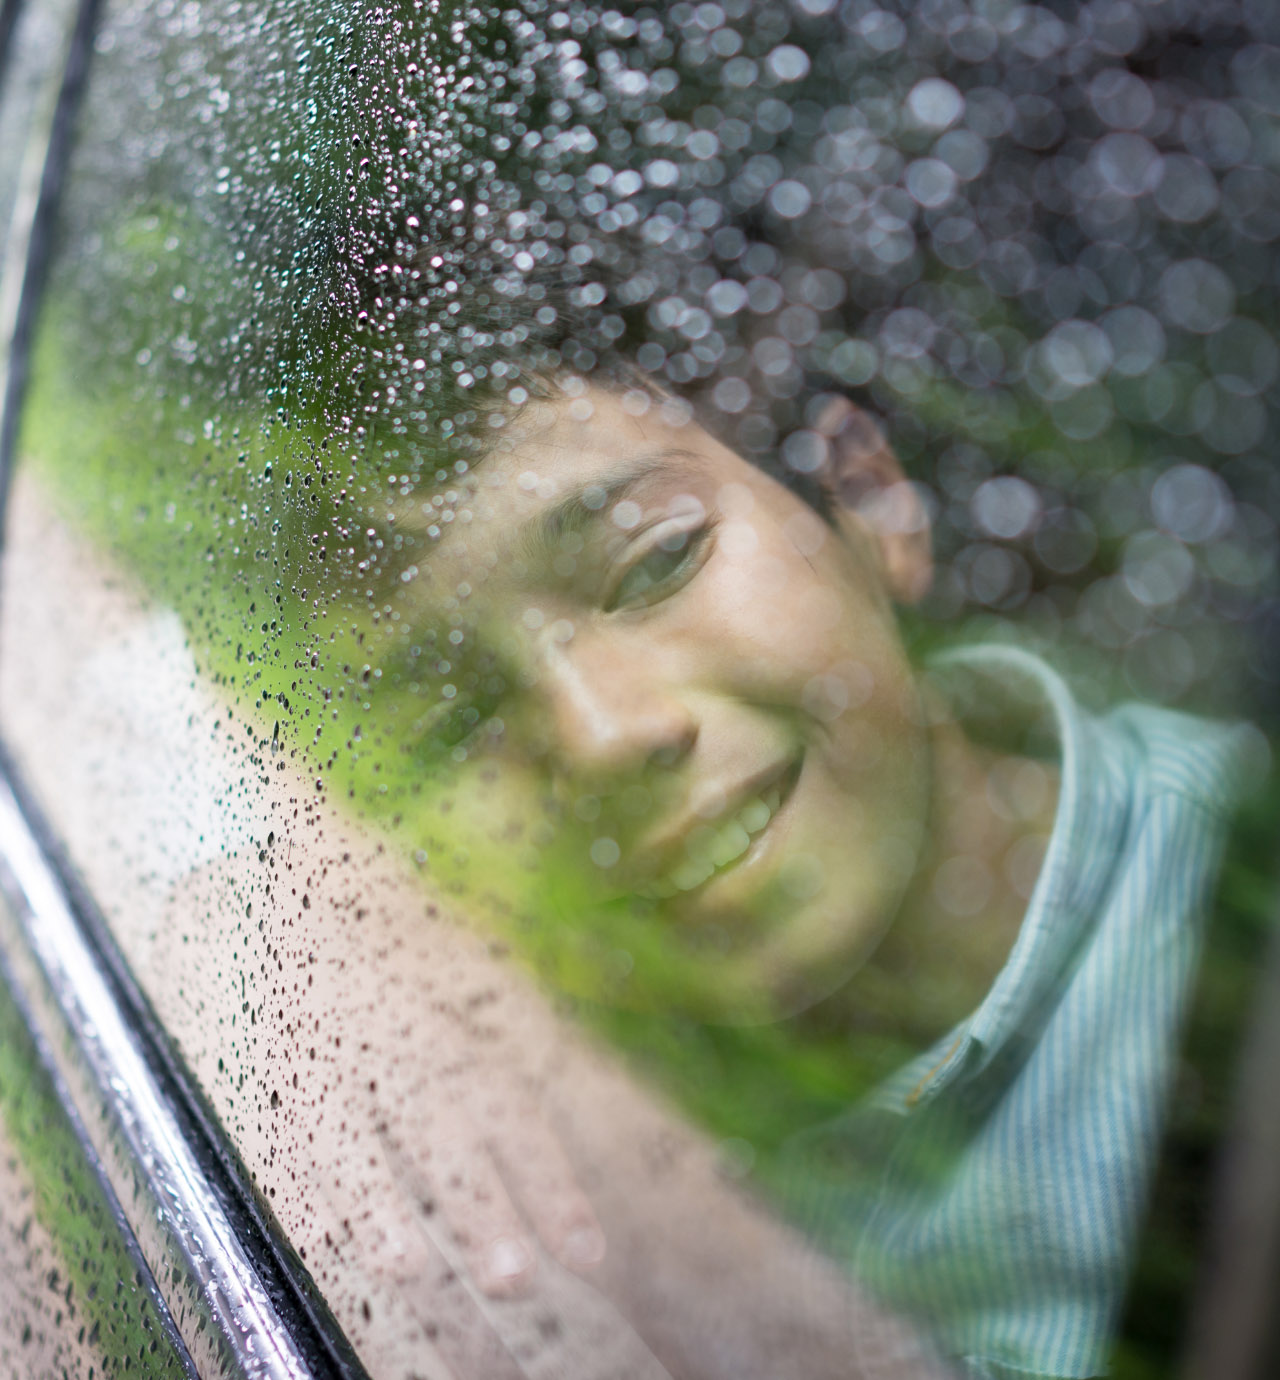 Boy looking through a car window